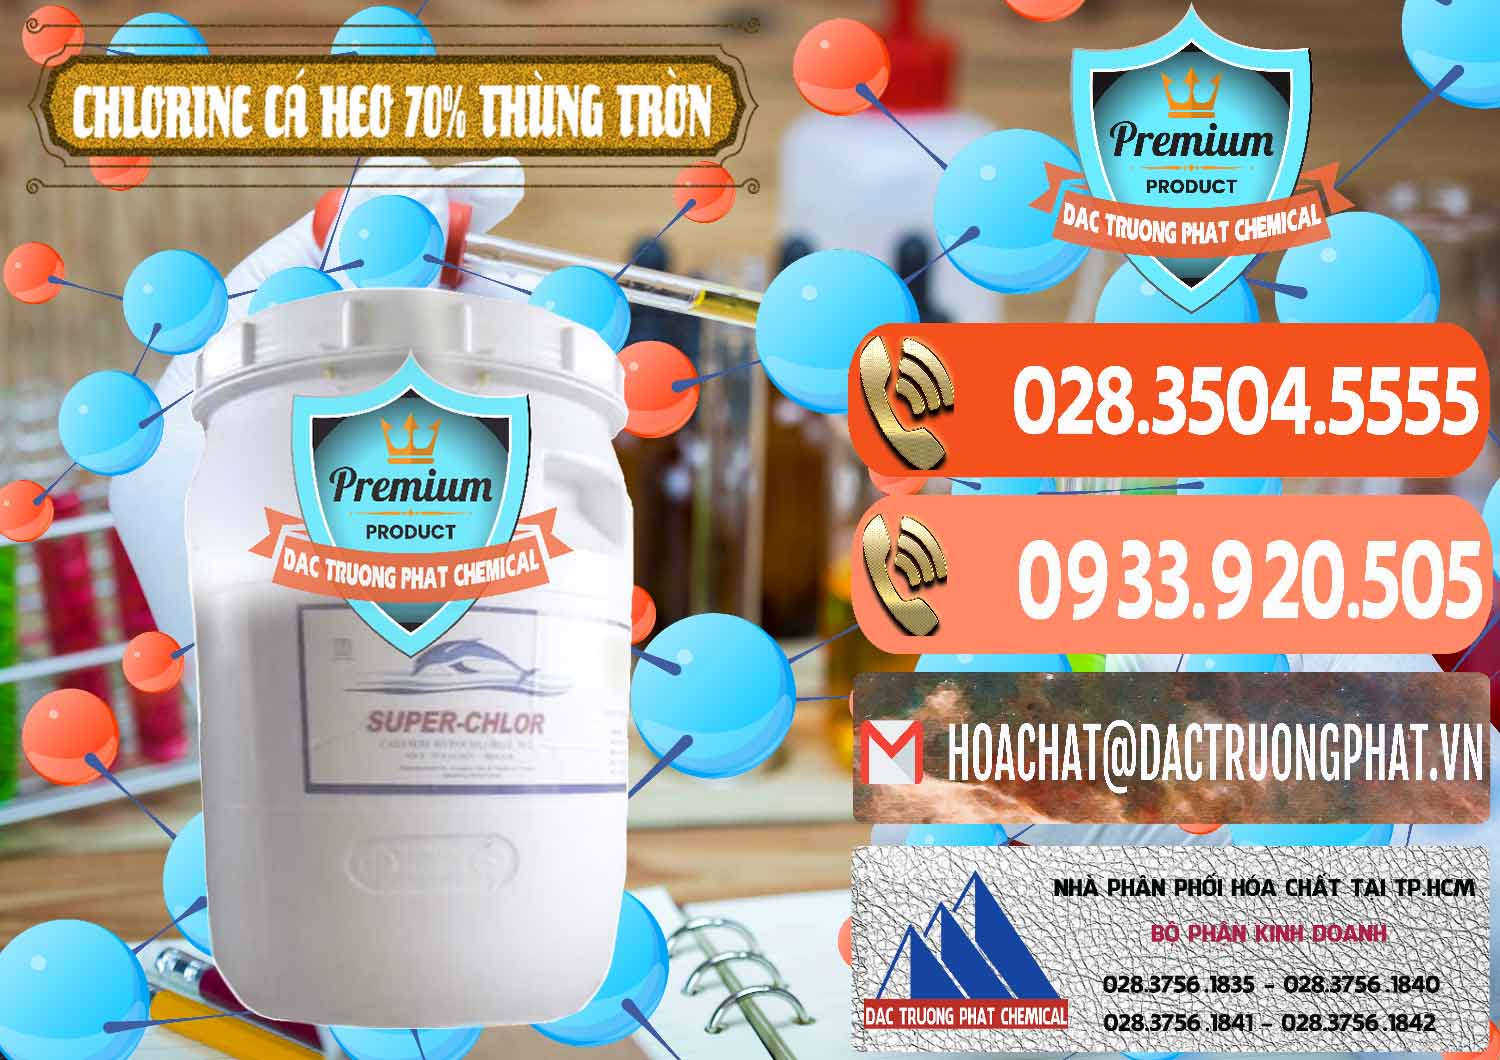 Đơn vị chuyên phân phối & bán Clorin - Chlorine Cá Heo 70% Super Chlor Thùng Tròn Nắp Trắng Trung Quốc China - 0239 - Cty cung cấp ( bán ) hóa chất tại TP.HCM - hoachatmientay.com